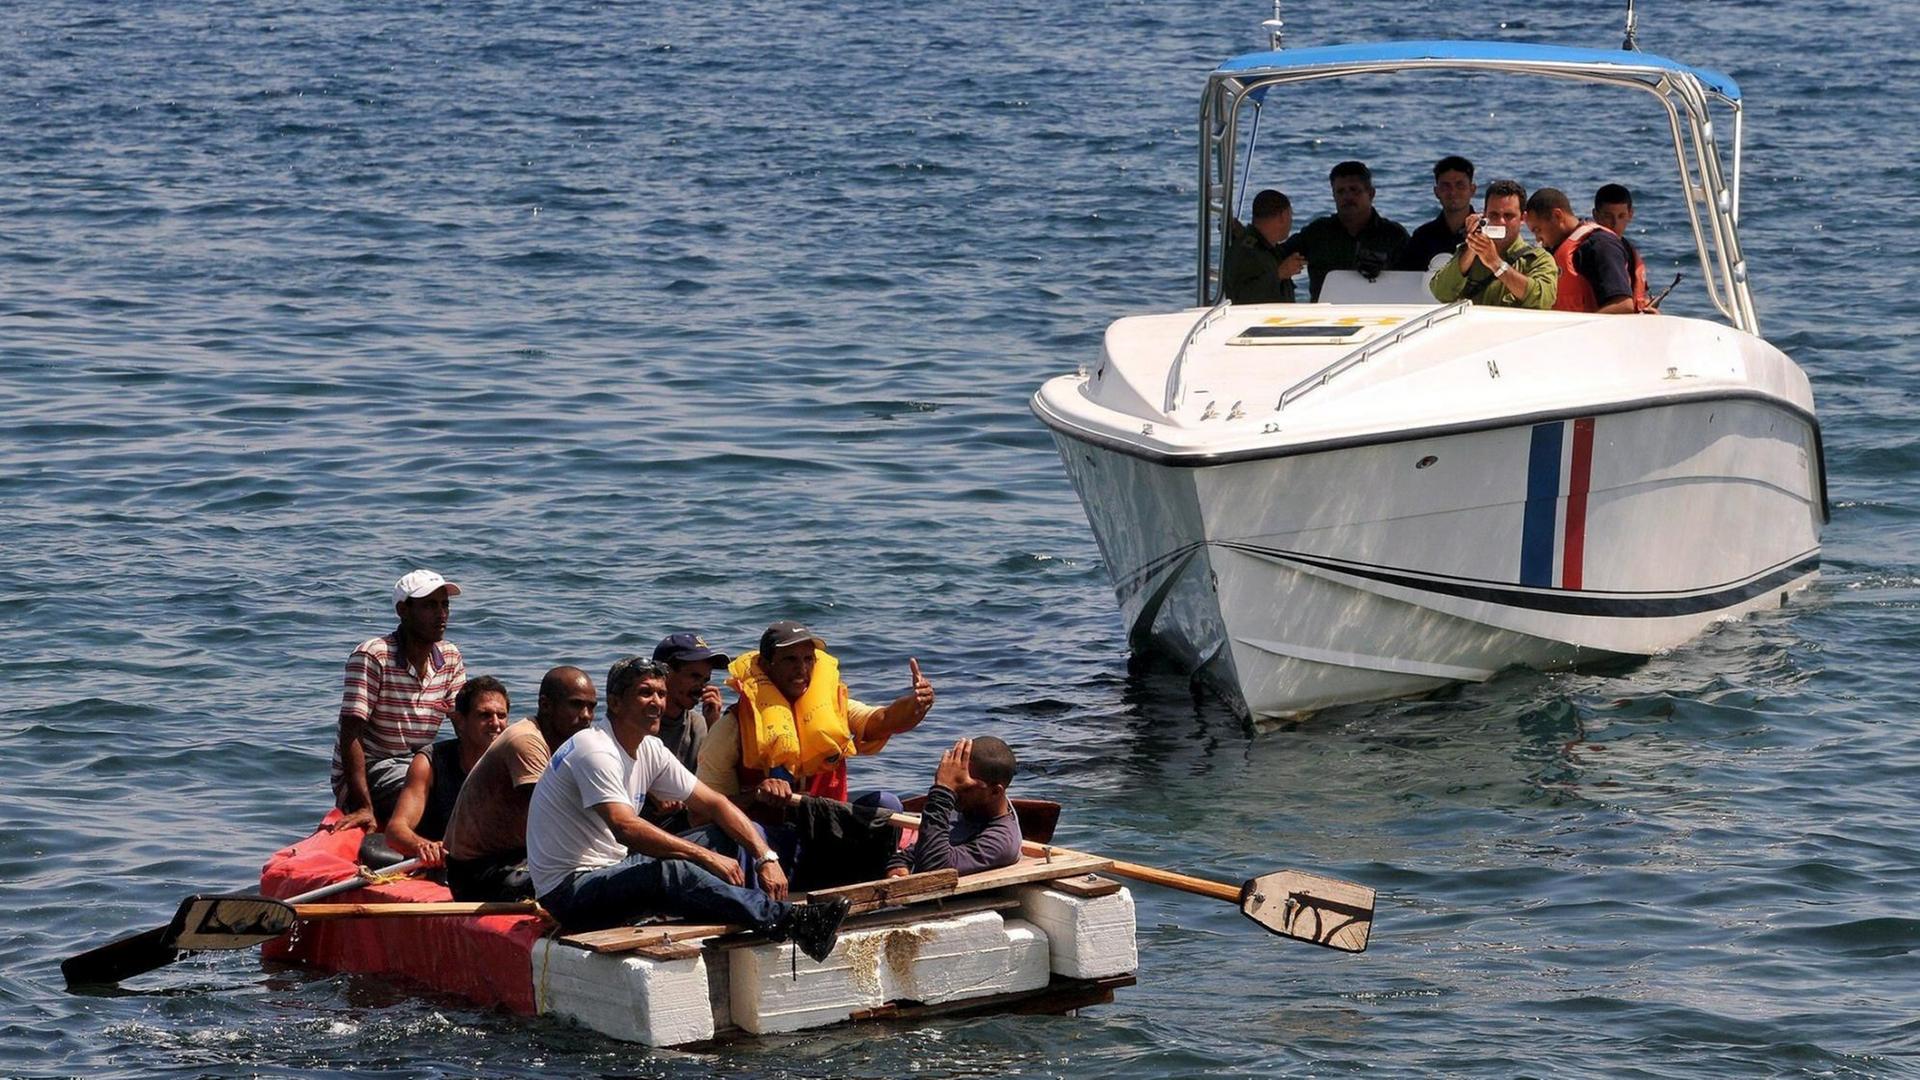 Sie sehen kubanische Flüchtlinge auf einem Floß und ein Boot der kubanischen Küstenwache.